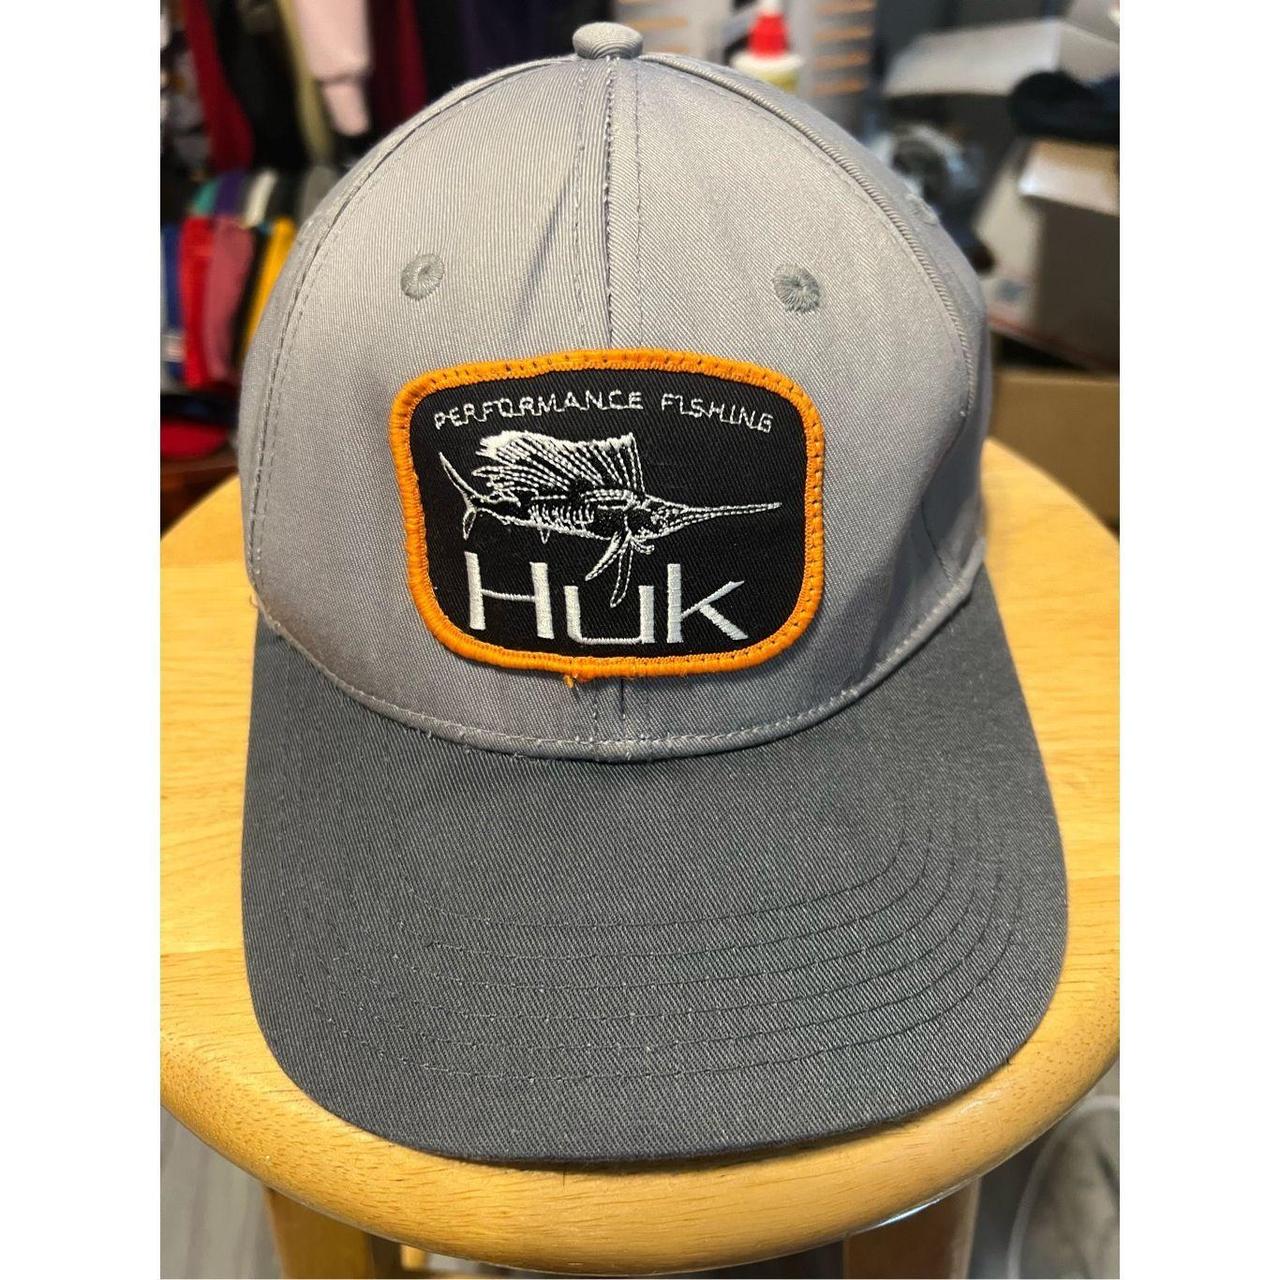 Huk Fishing Performance Trucker Cap